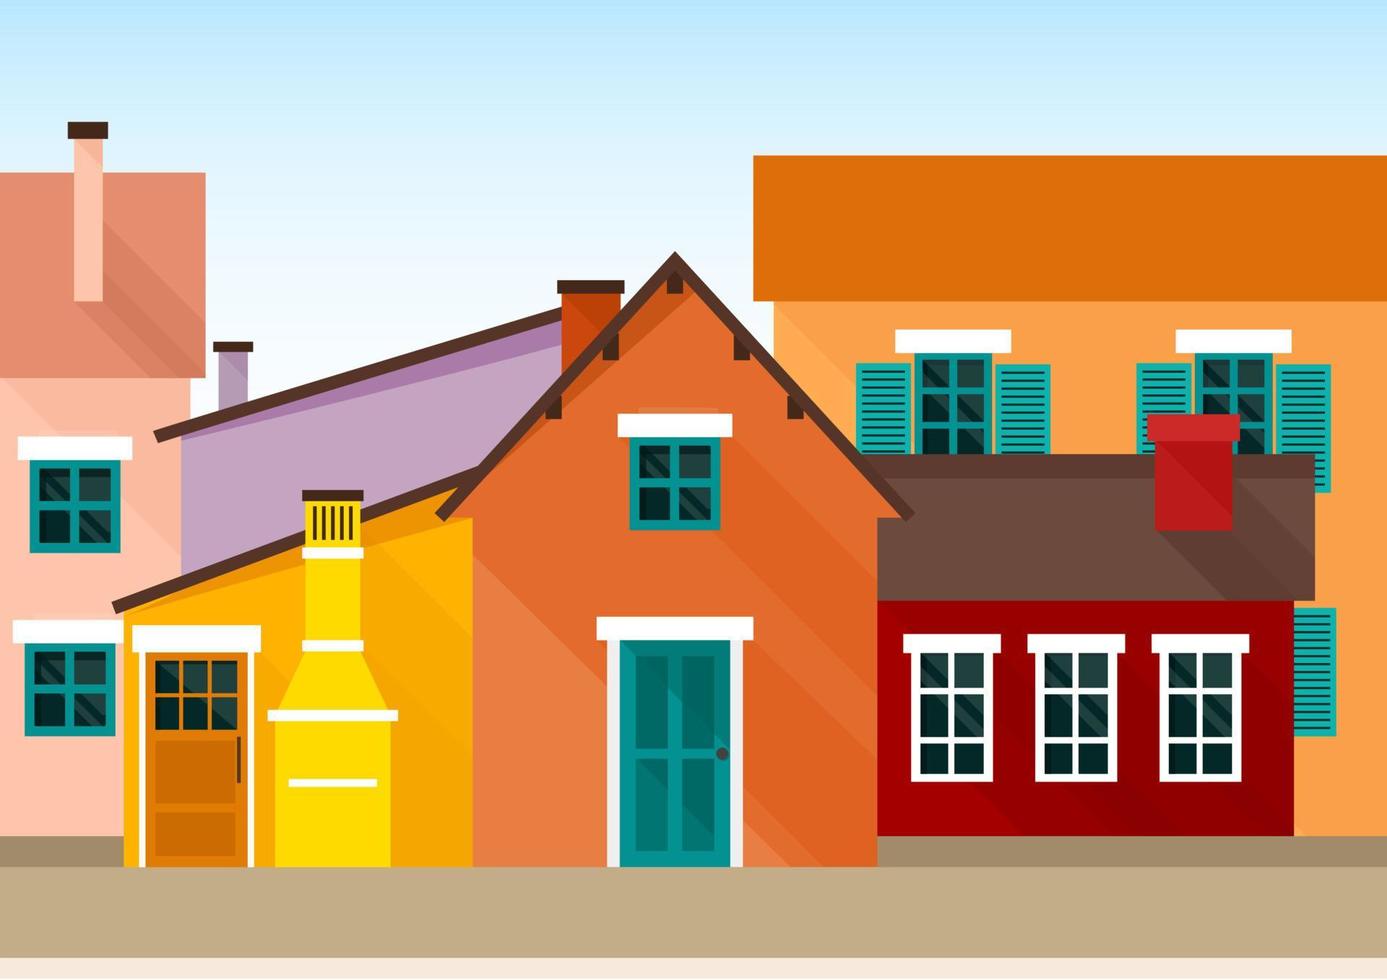 paisaje urbano de muchas casas de estilo escandinavo de color amarillo brillante, rojo y naranja vector